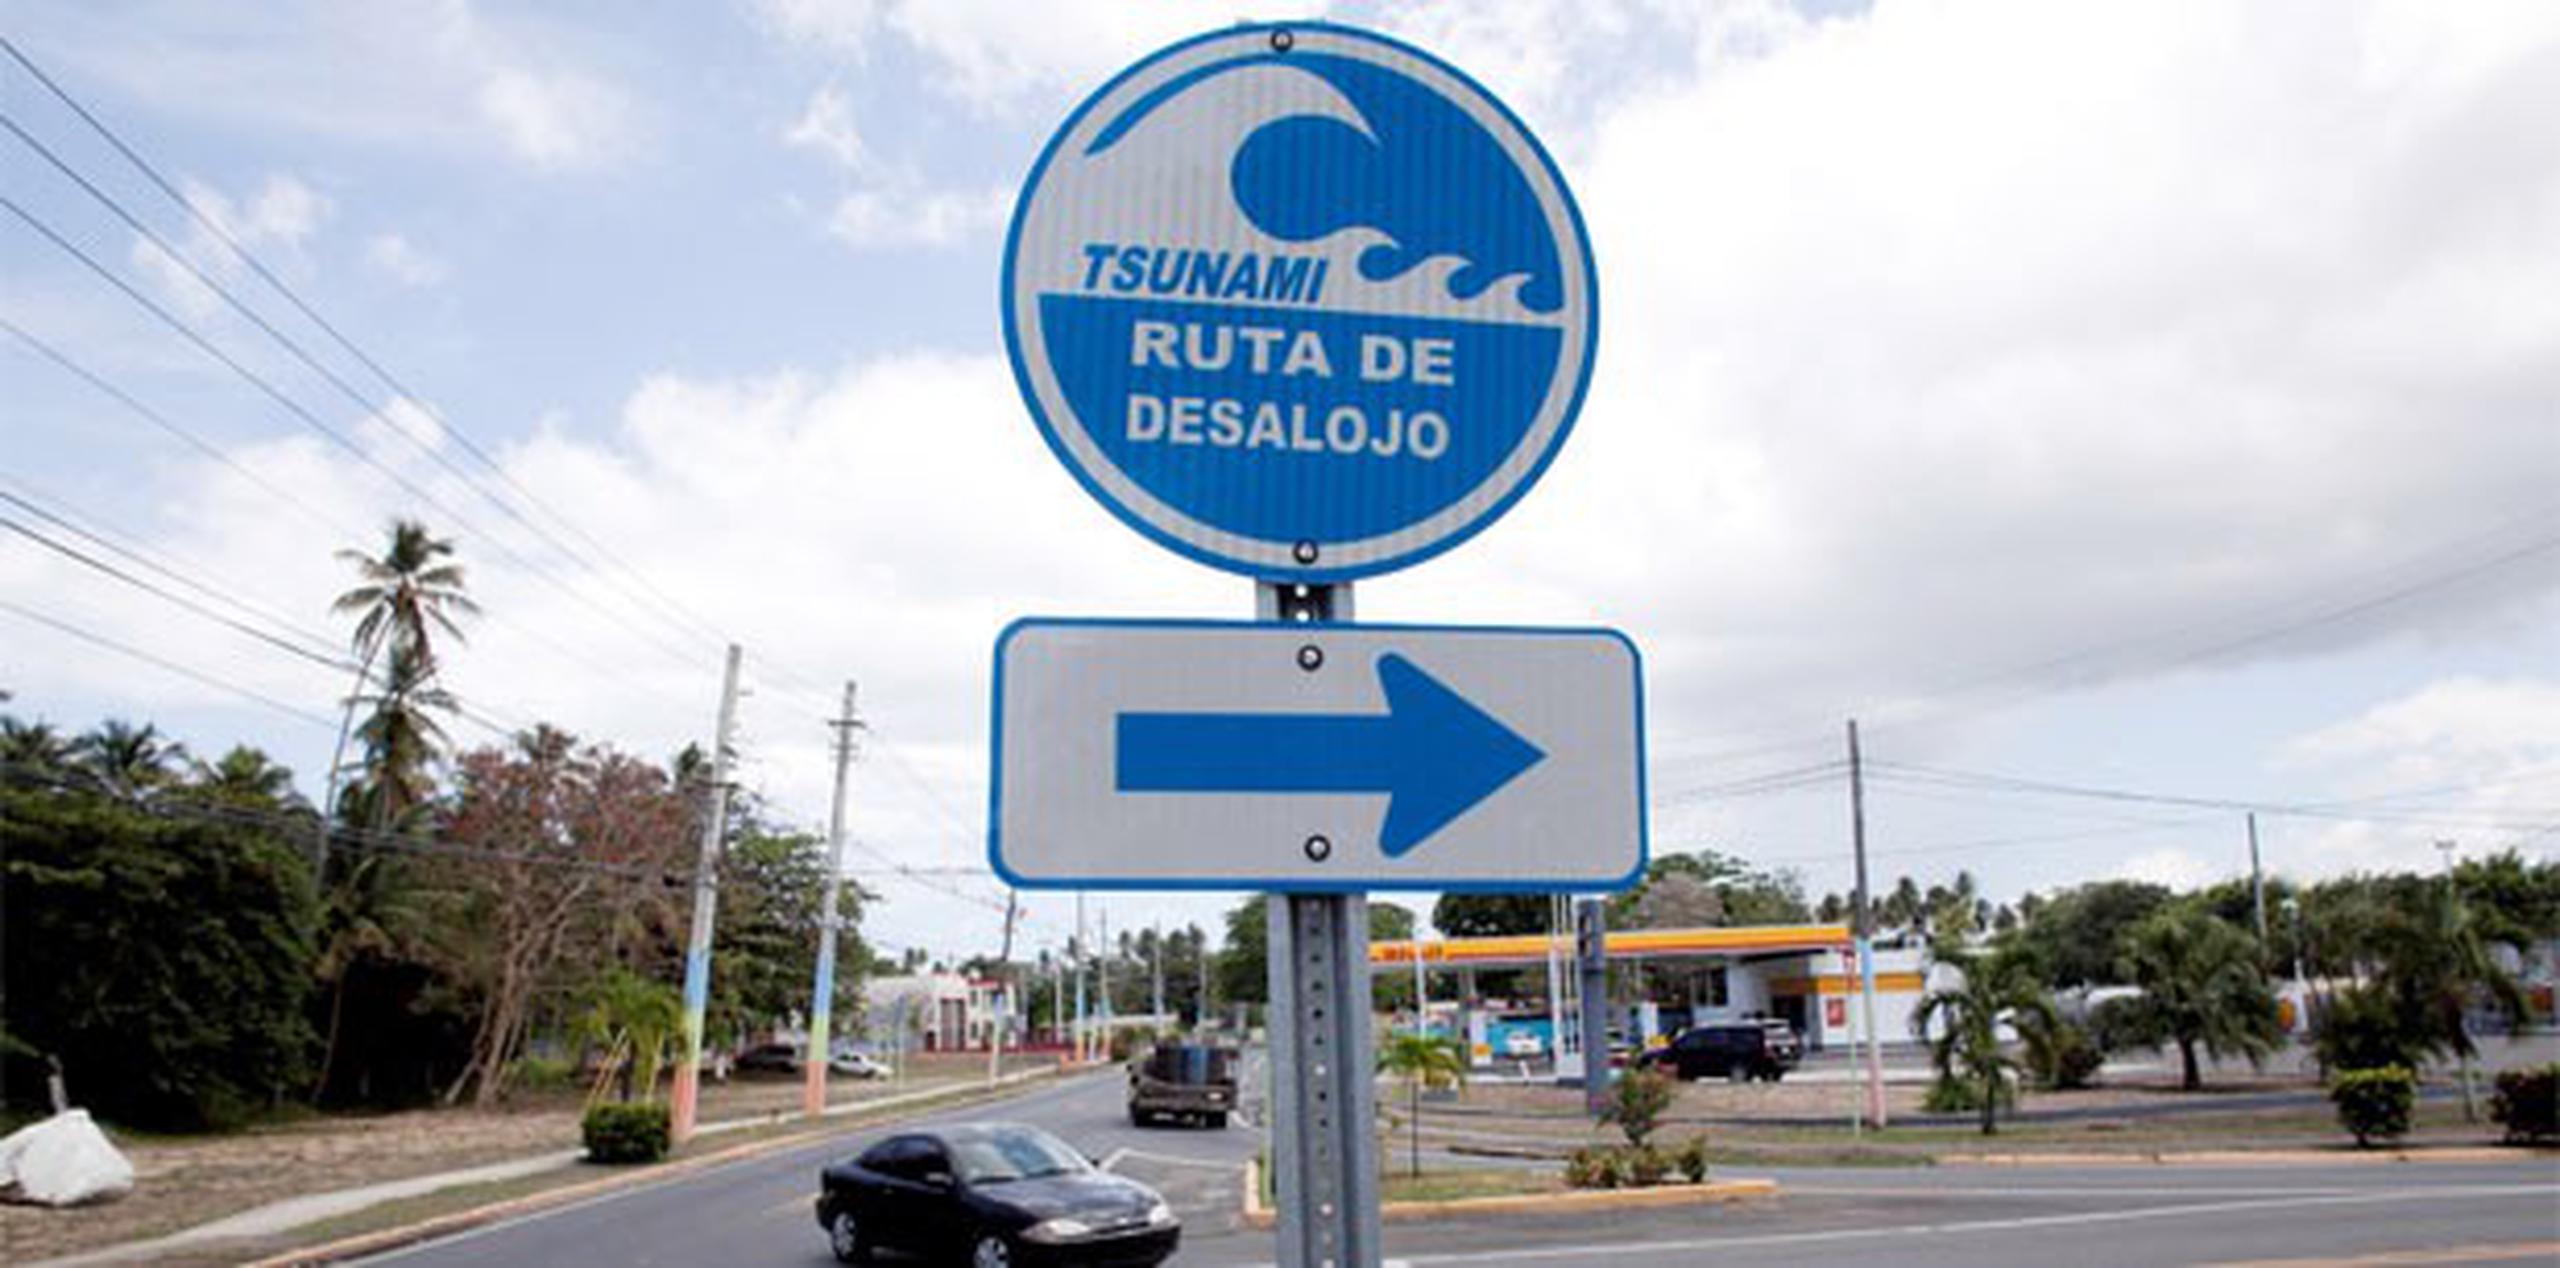 Anteriormente se emitían avisos de tsunamis para terremotos de magnitudes iguales o mayores a 6.5. (Archivo)